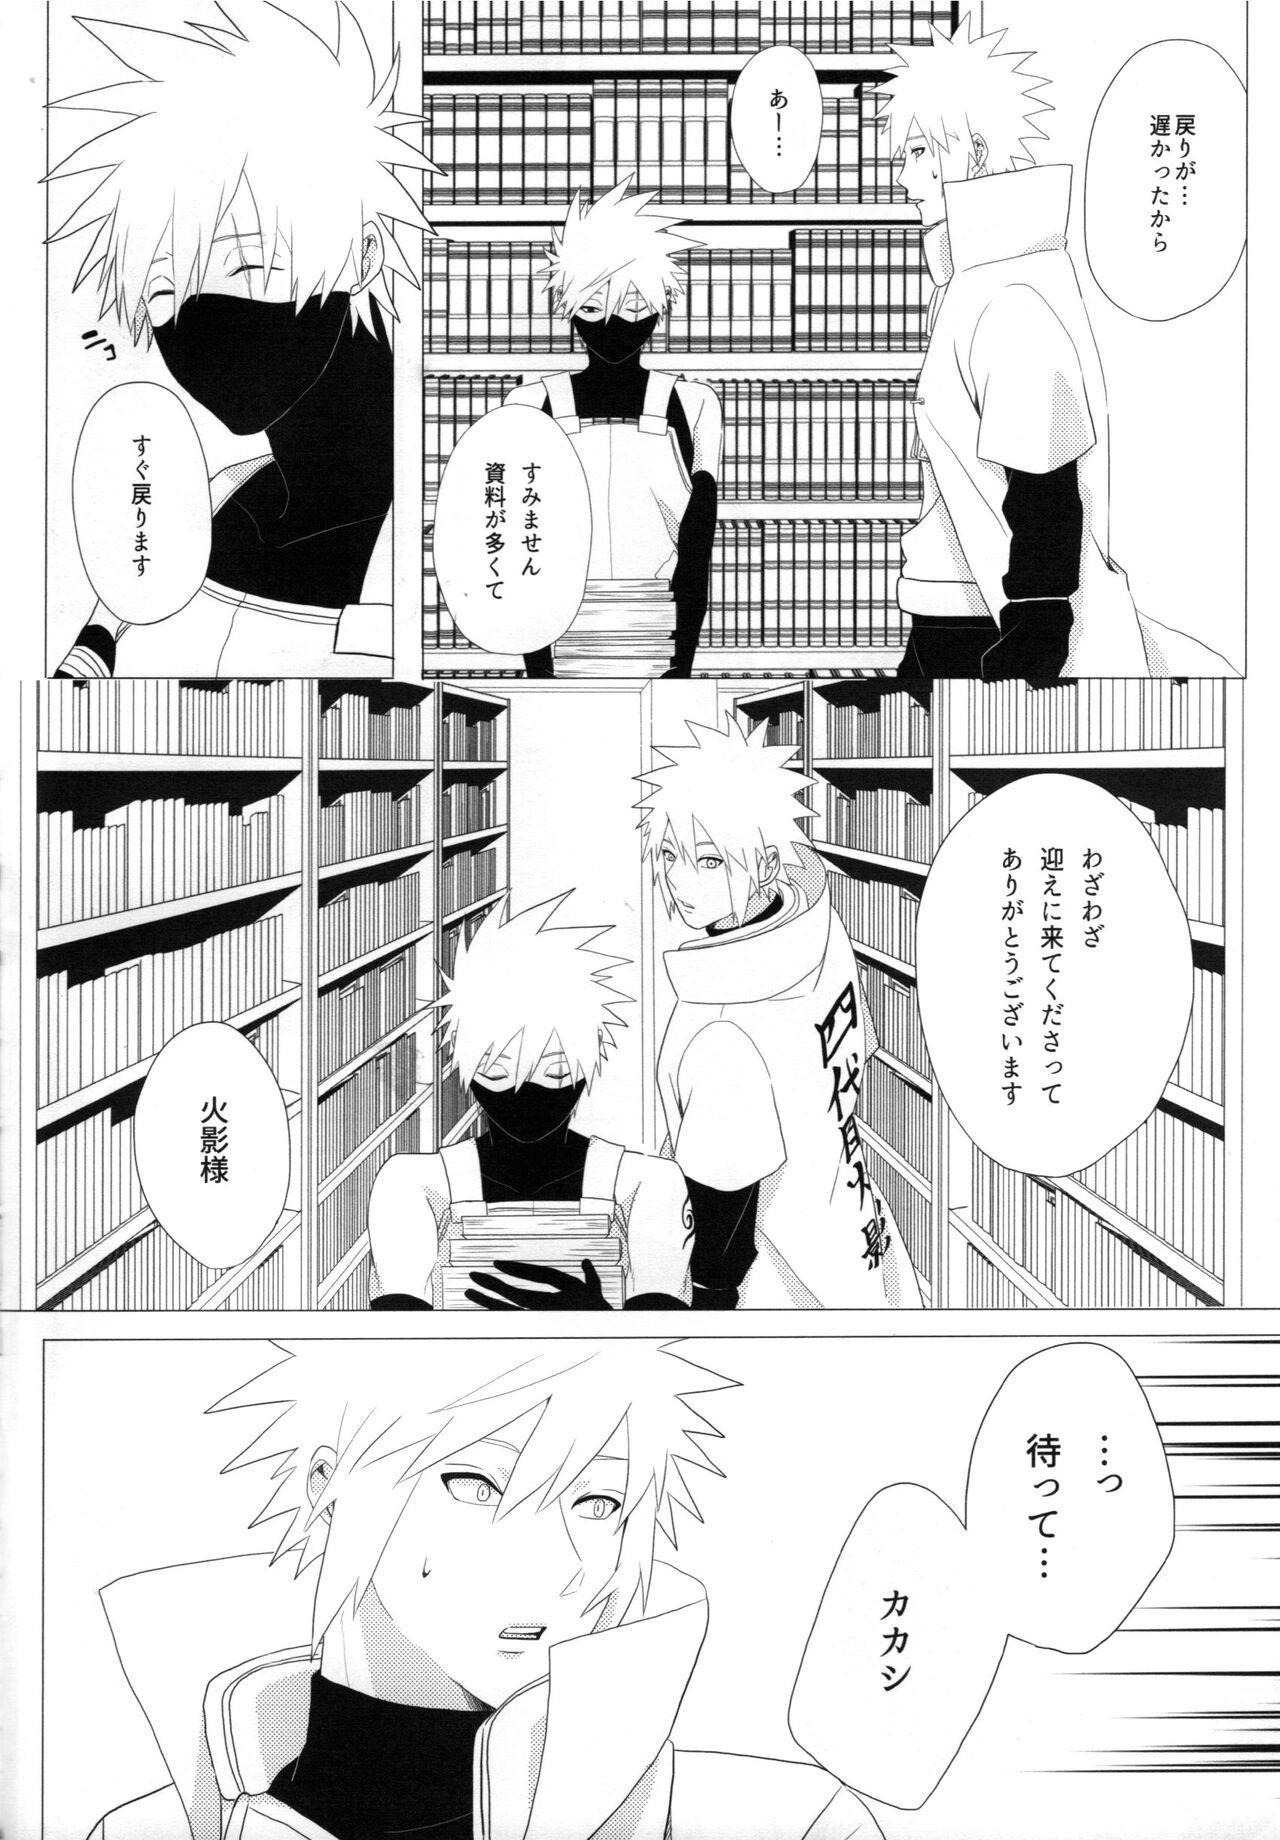 Pene Tada ichido yukinoshita ni uzumoreru - Naruto Gay Facial - Page 11